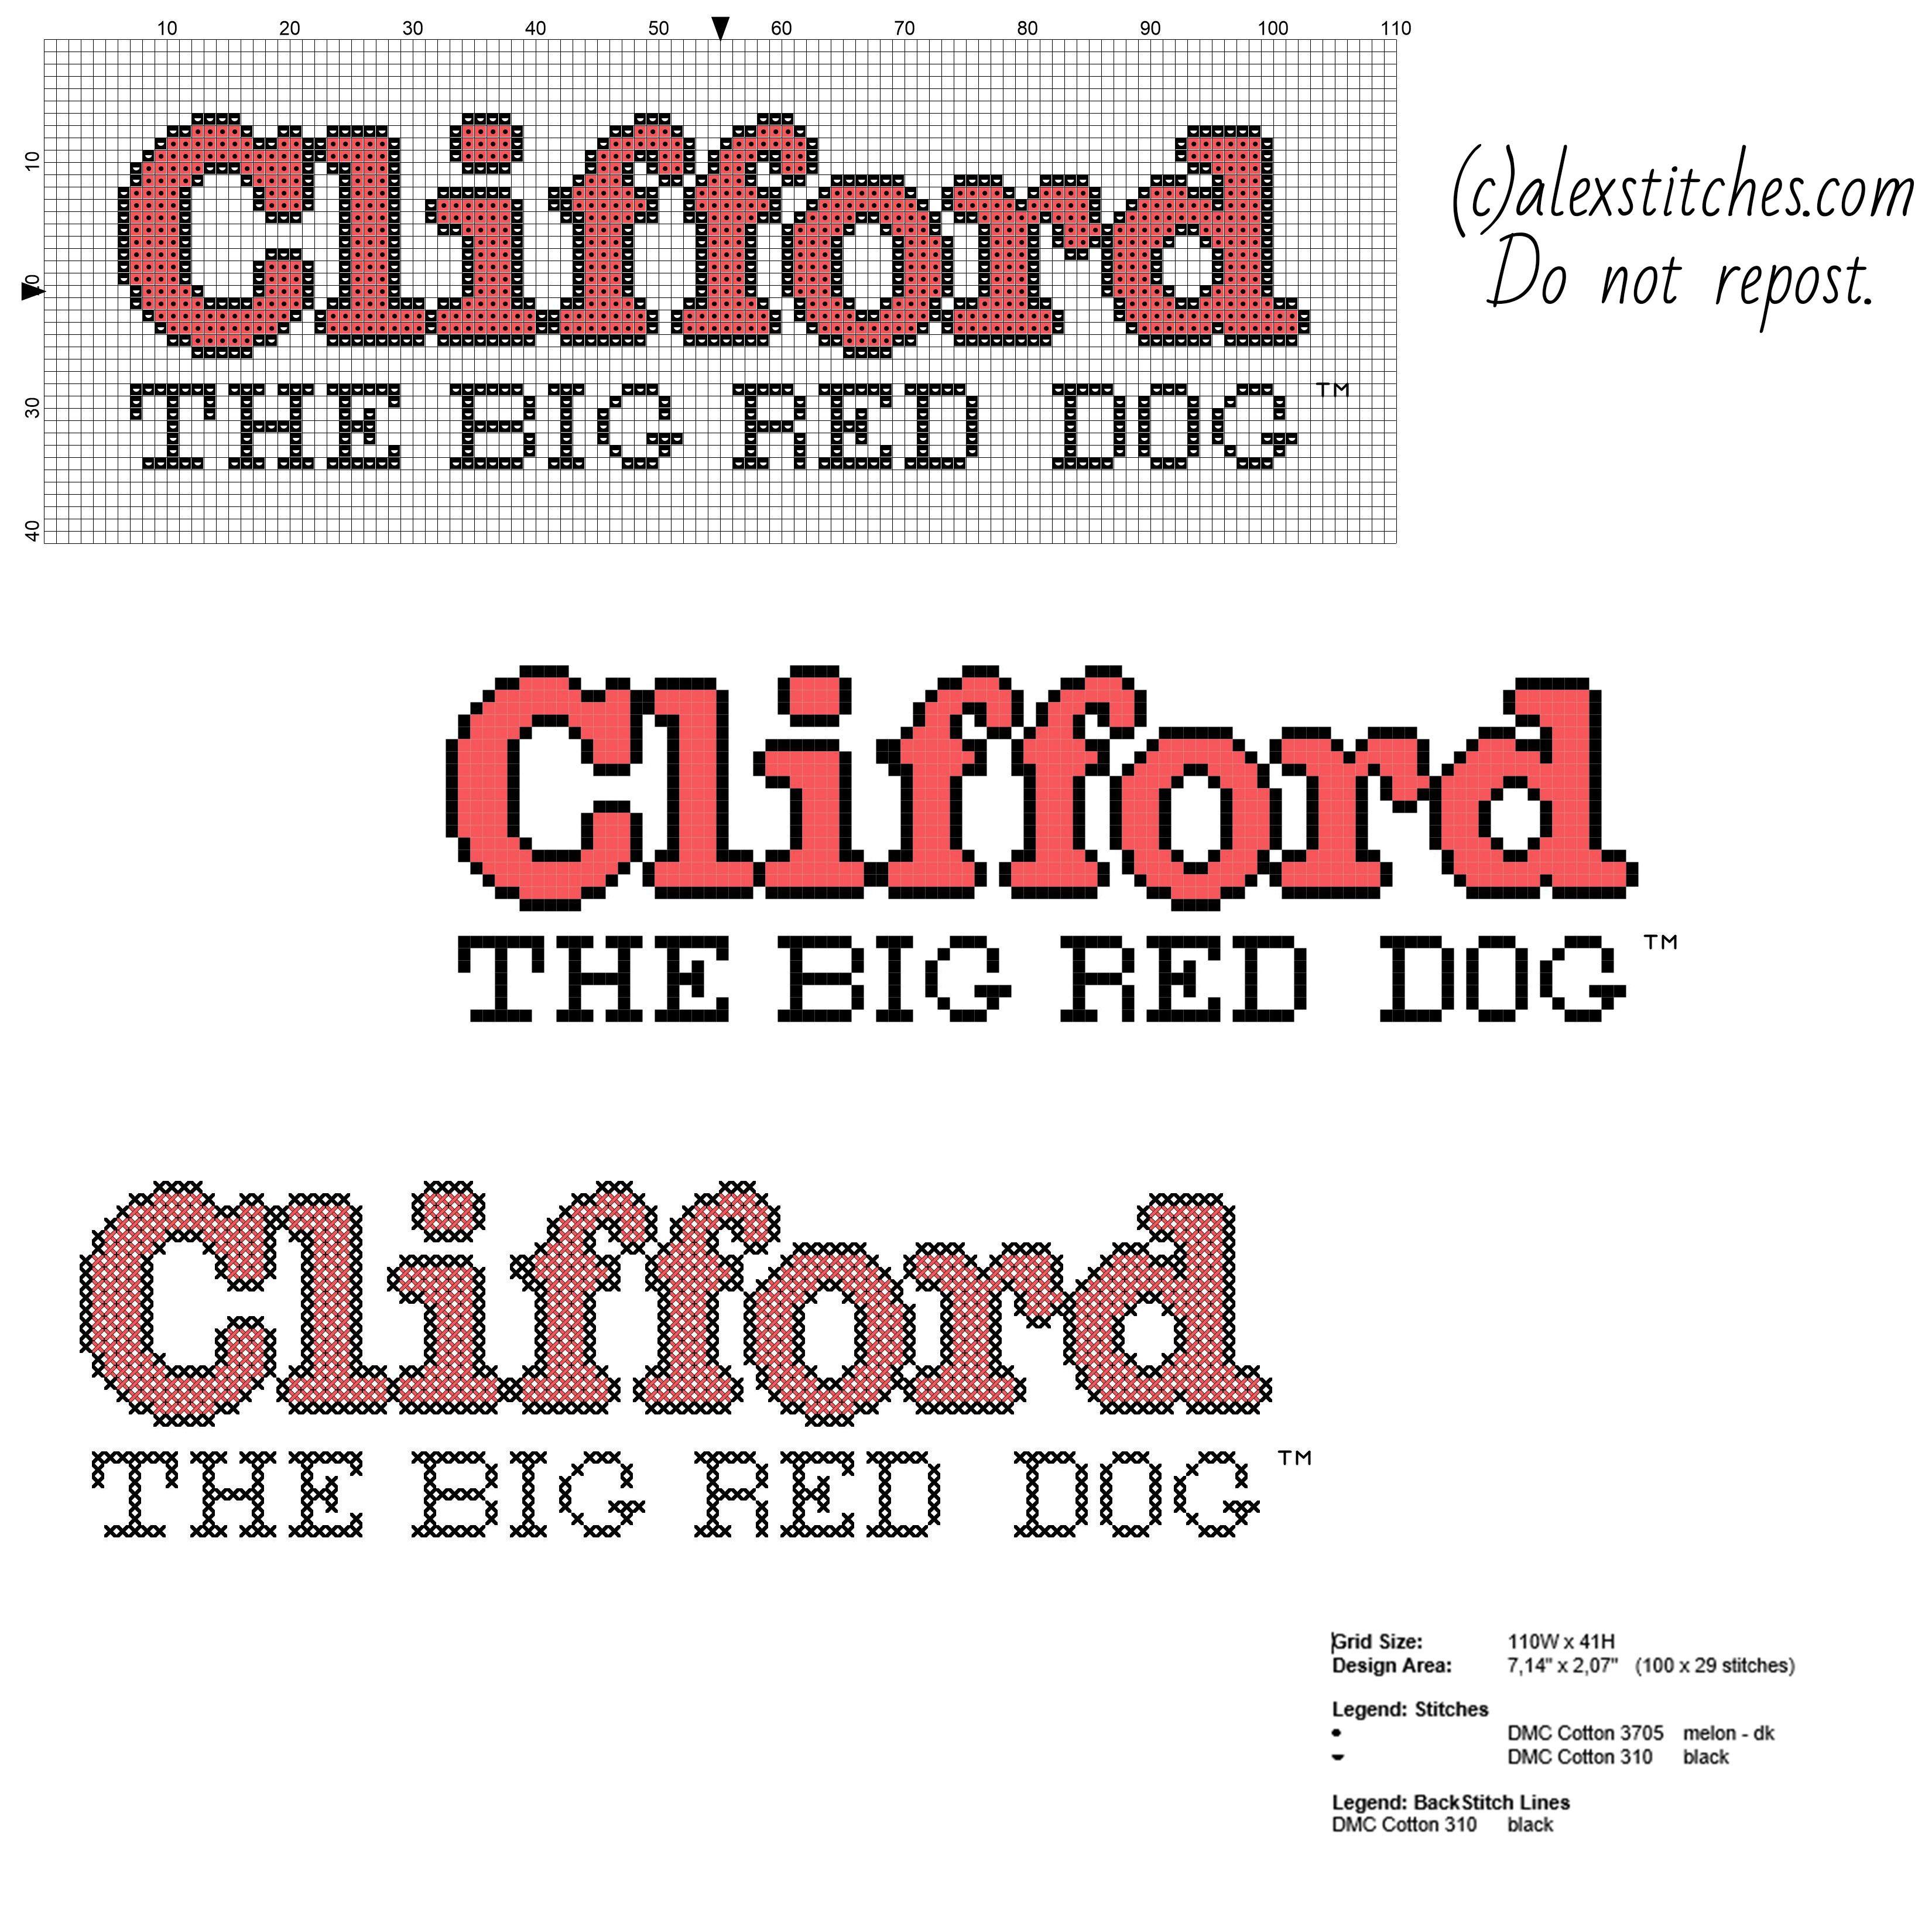 Big Red Dog Logo - Clifford the big red dog cartoon logo free cross stitch pattern ...